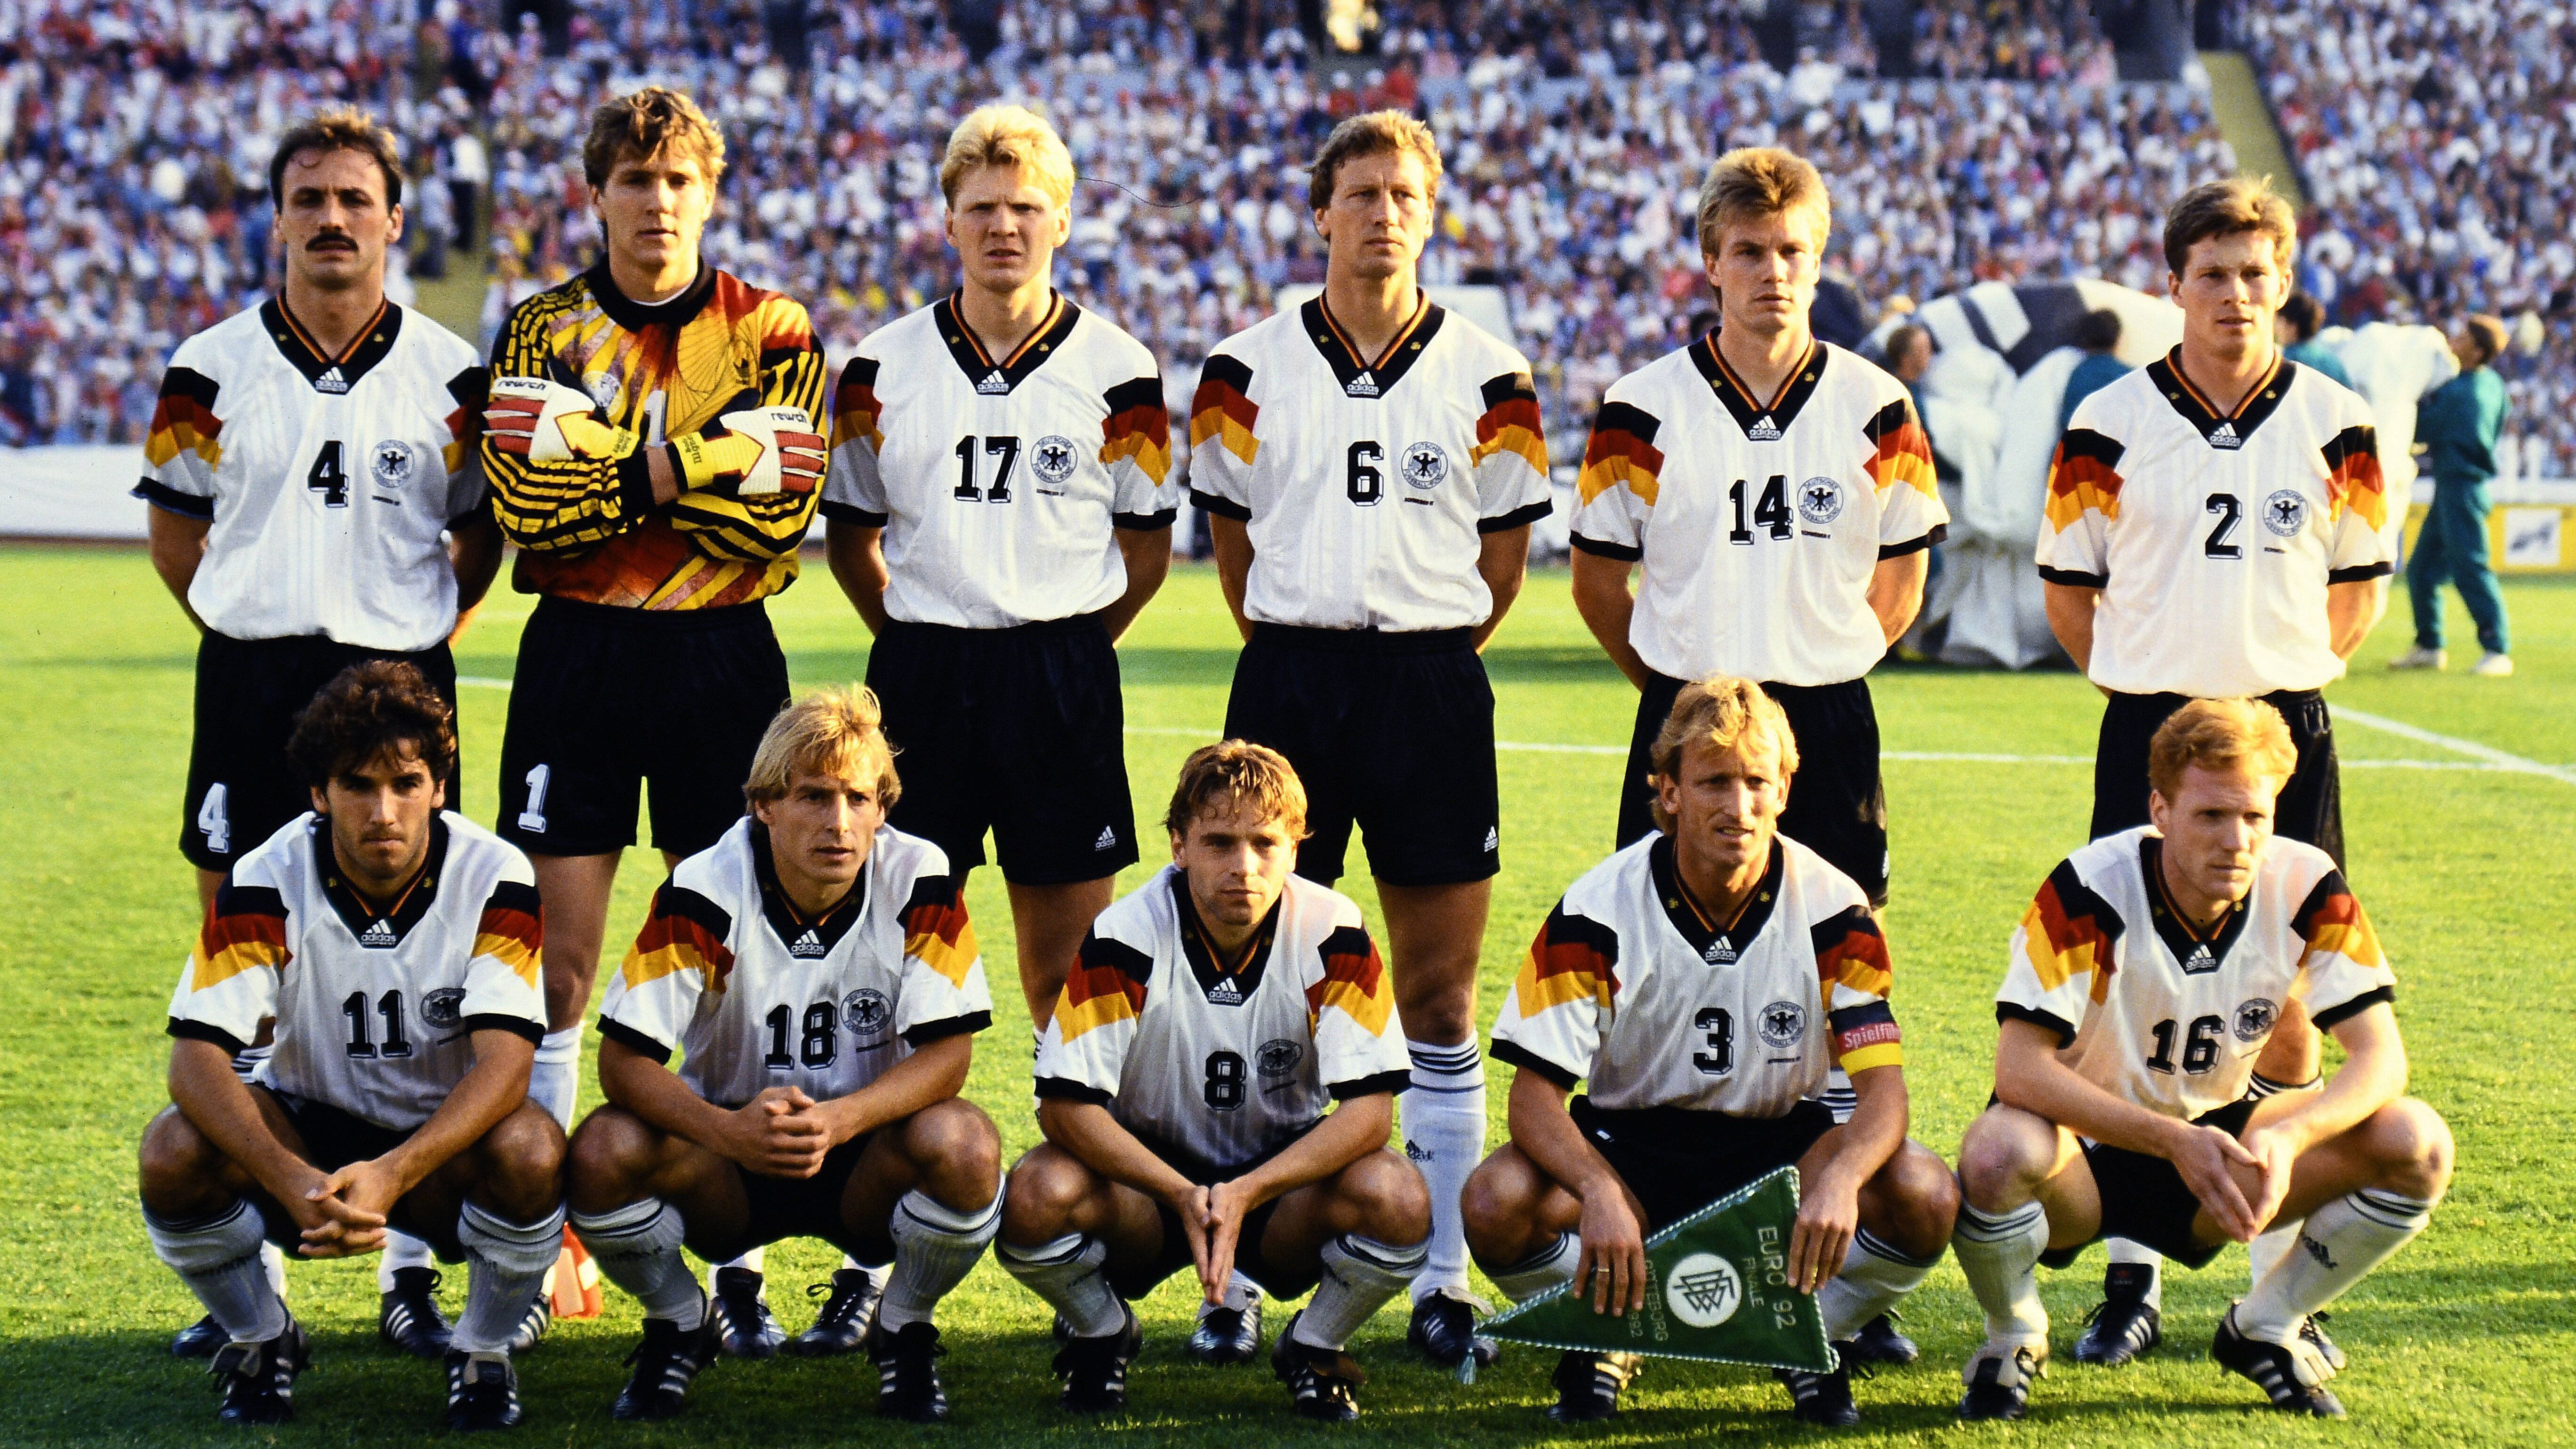 
                <strong>Verlierer in weißen Trikots</strong><br>
                Auch weiße Trikots haben in den Endspielen der EM eine negative Bilanz. Mit ebenfalls sechs Niederlagen teilen sich die weißen Jerseys Platz eins mit den roten.Die Verlierer sind: Jugoslawien 1968 (0:2 gegen Italien), BRD 1976 (3:5 im Elfmeterschießen gegen die Tschechoslowakei), UdSSR 1988 (0:2 gegen die Niederlande), Deutschland 1992 (0:2 gegen Dänemark), Italien 2000 (1:2 gegen Frankreich durch Golden Goal), Deutschland 2008 (0:1 gegen Spanien)
              